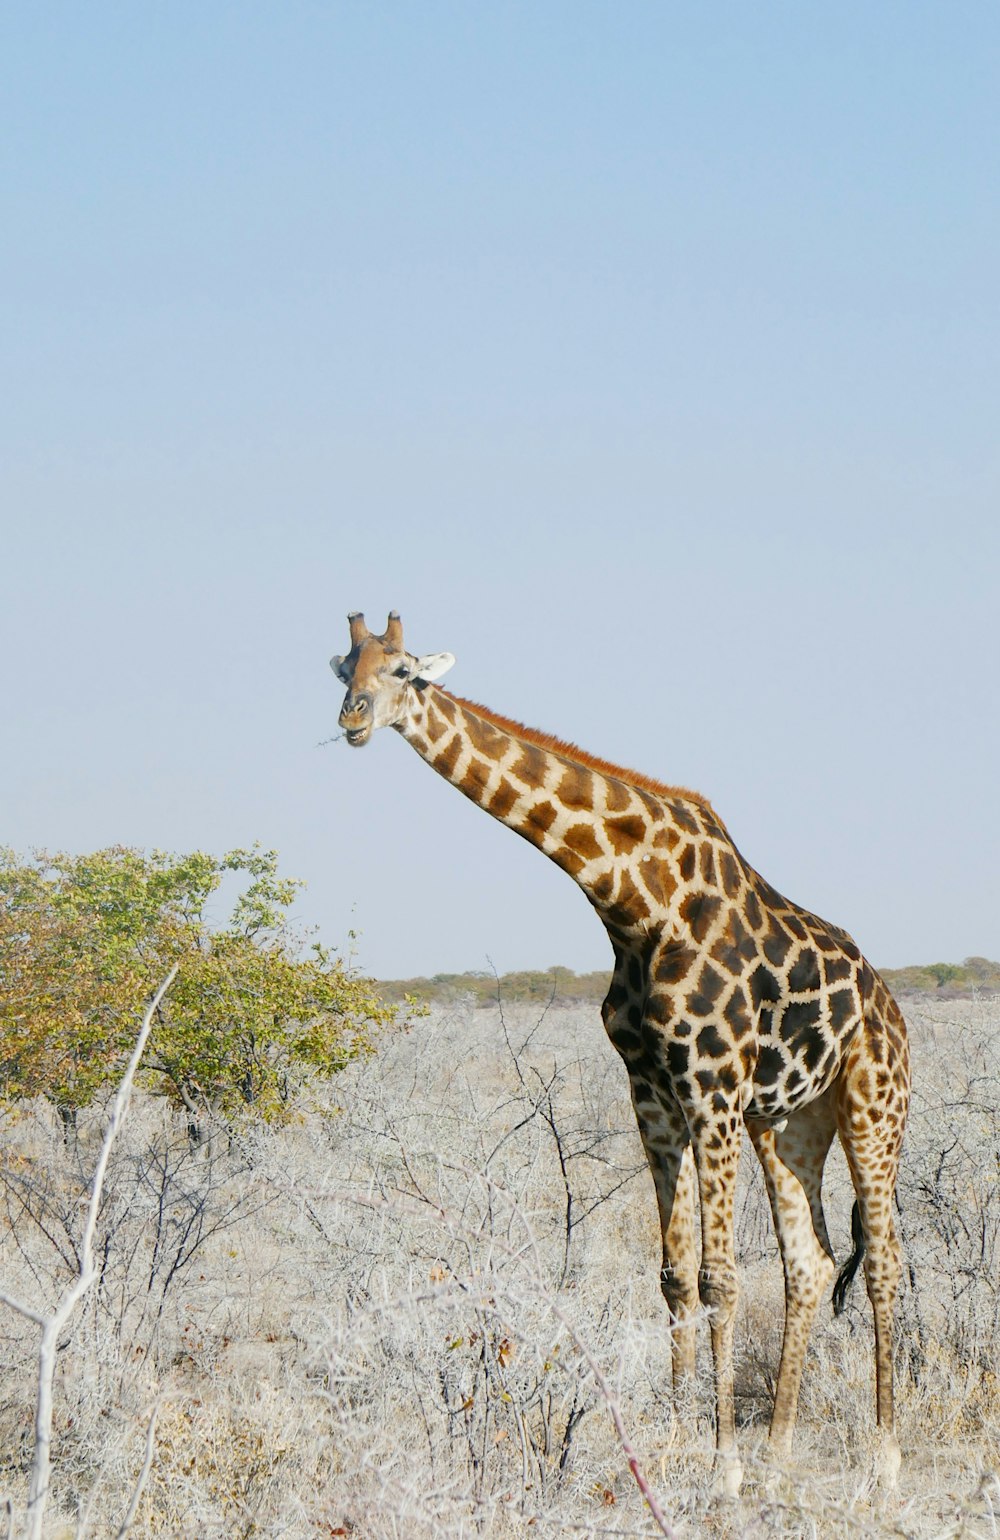 a giraffe standing in a dry grass field